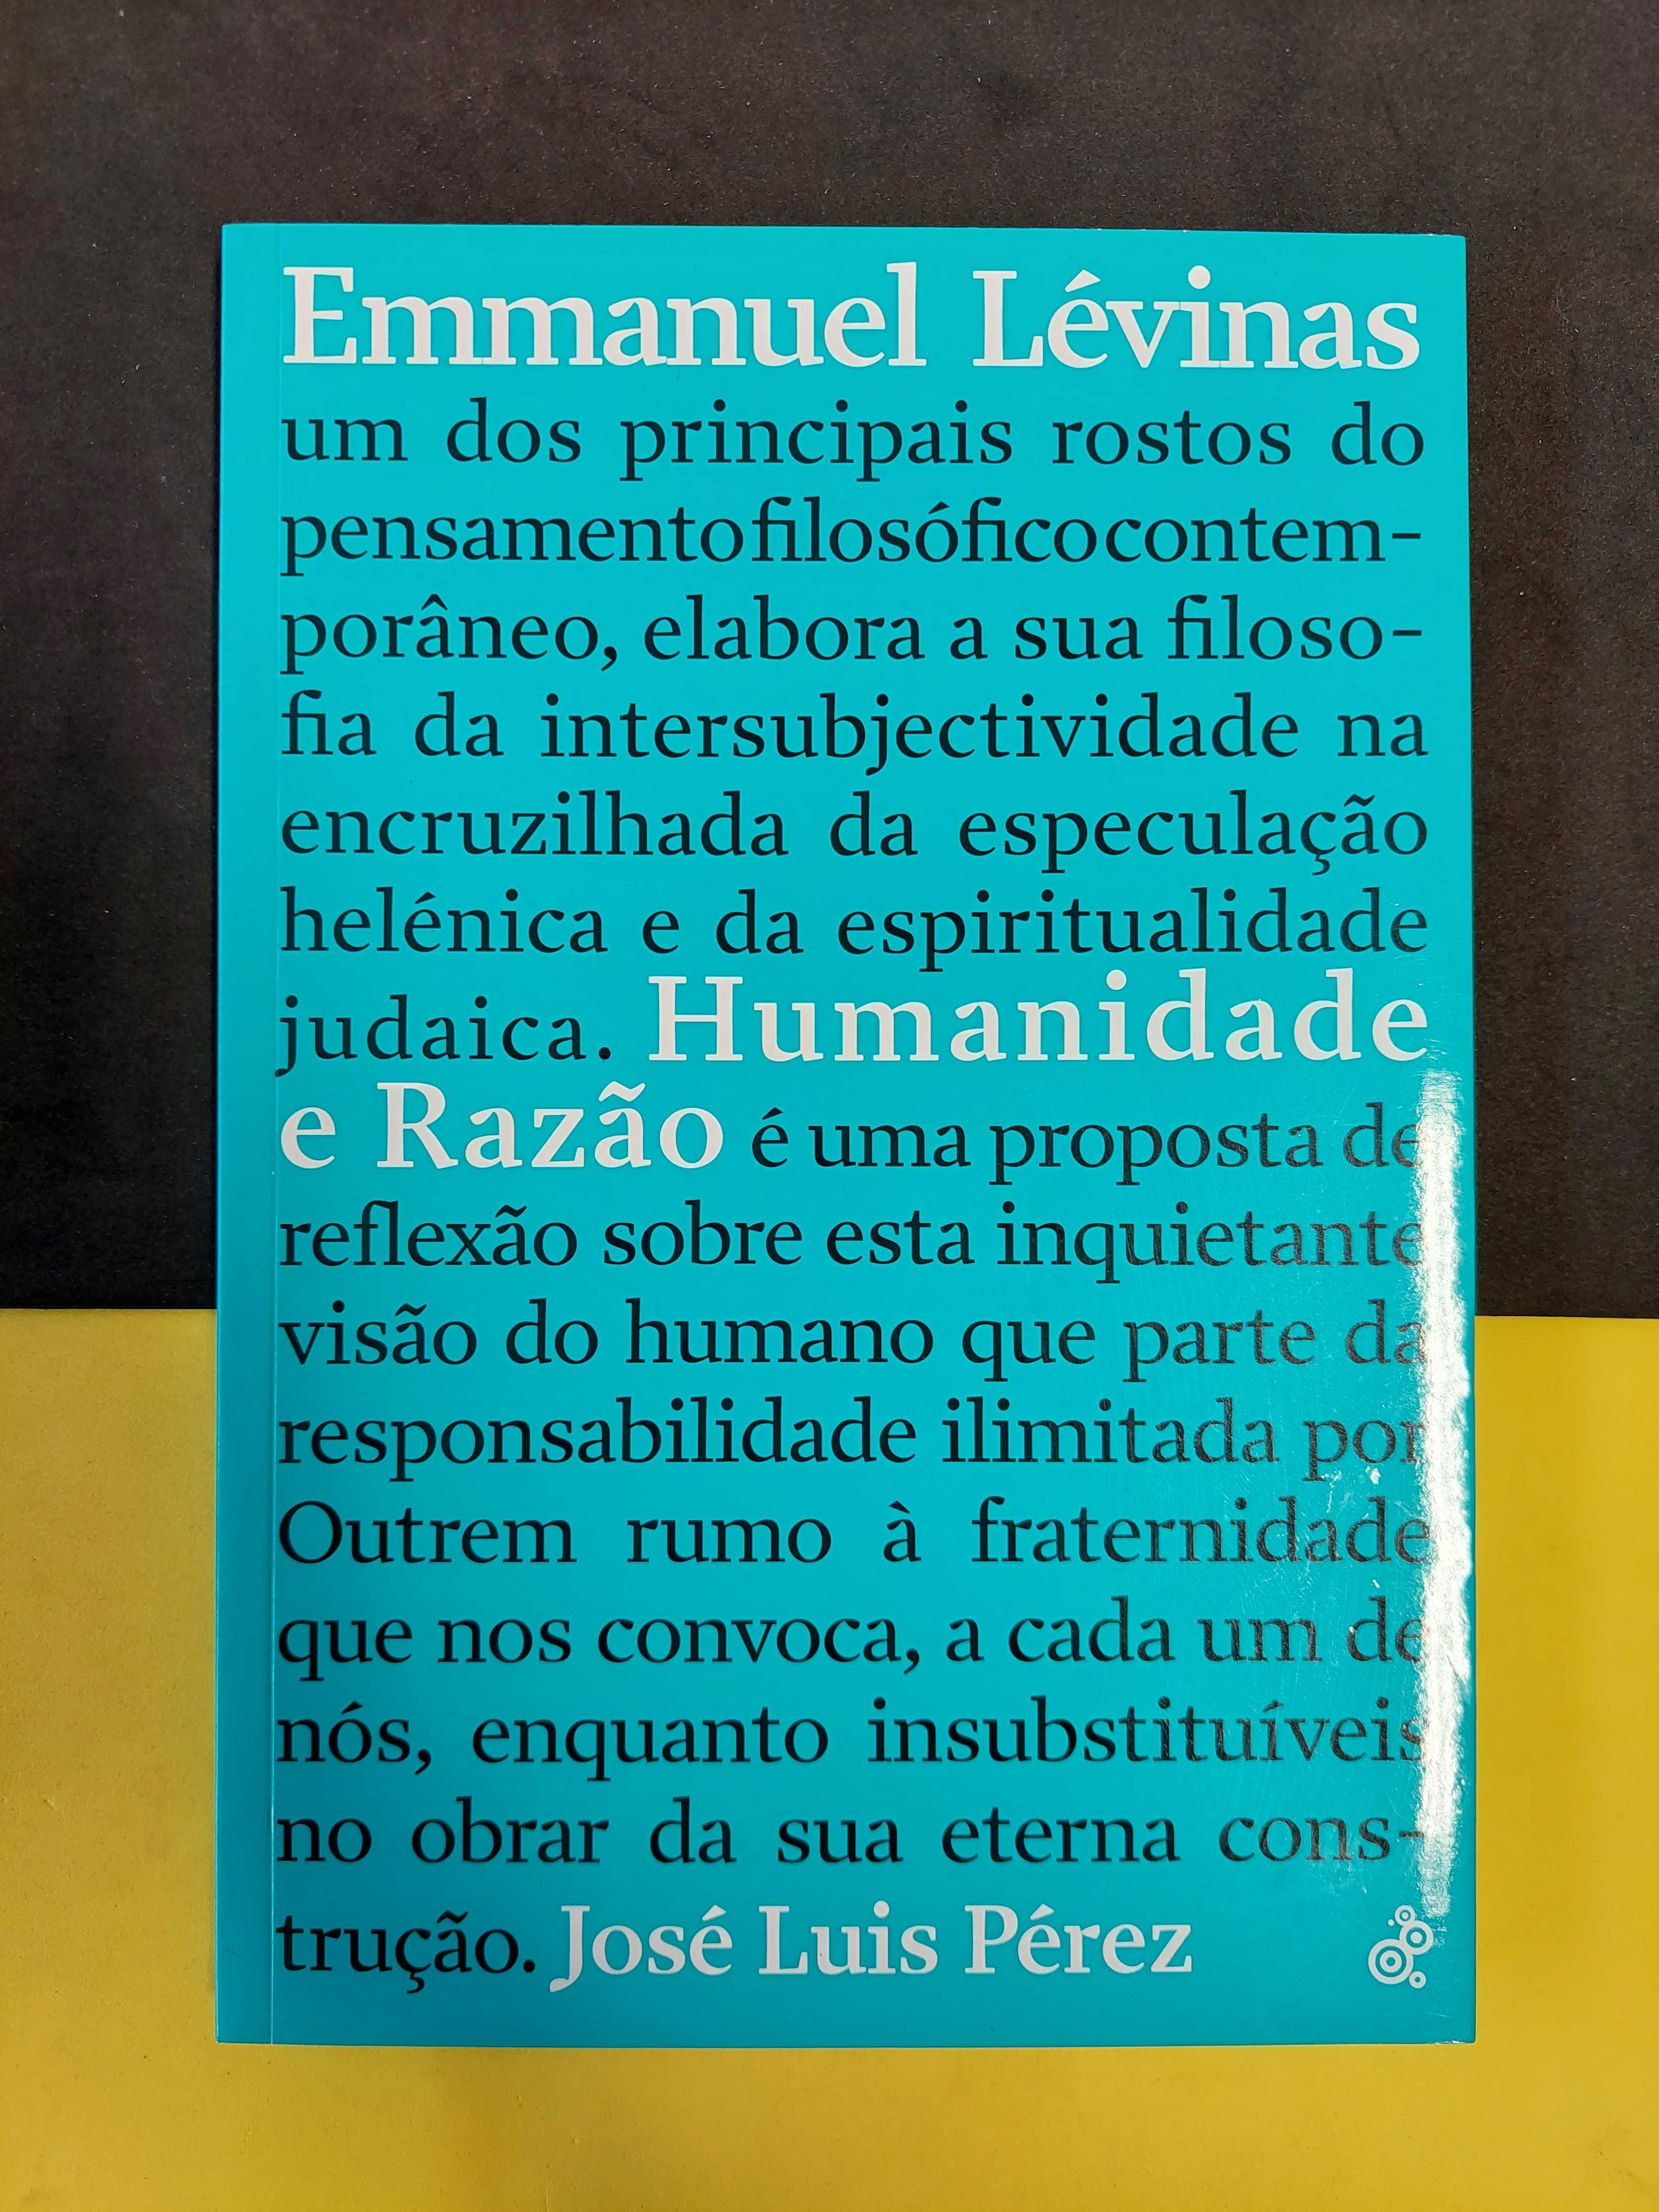 José Luis Pérez - Emmanuel Lévinas, Humanidade e Razão